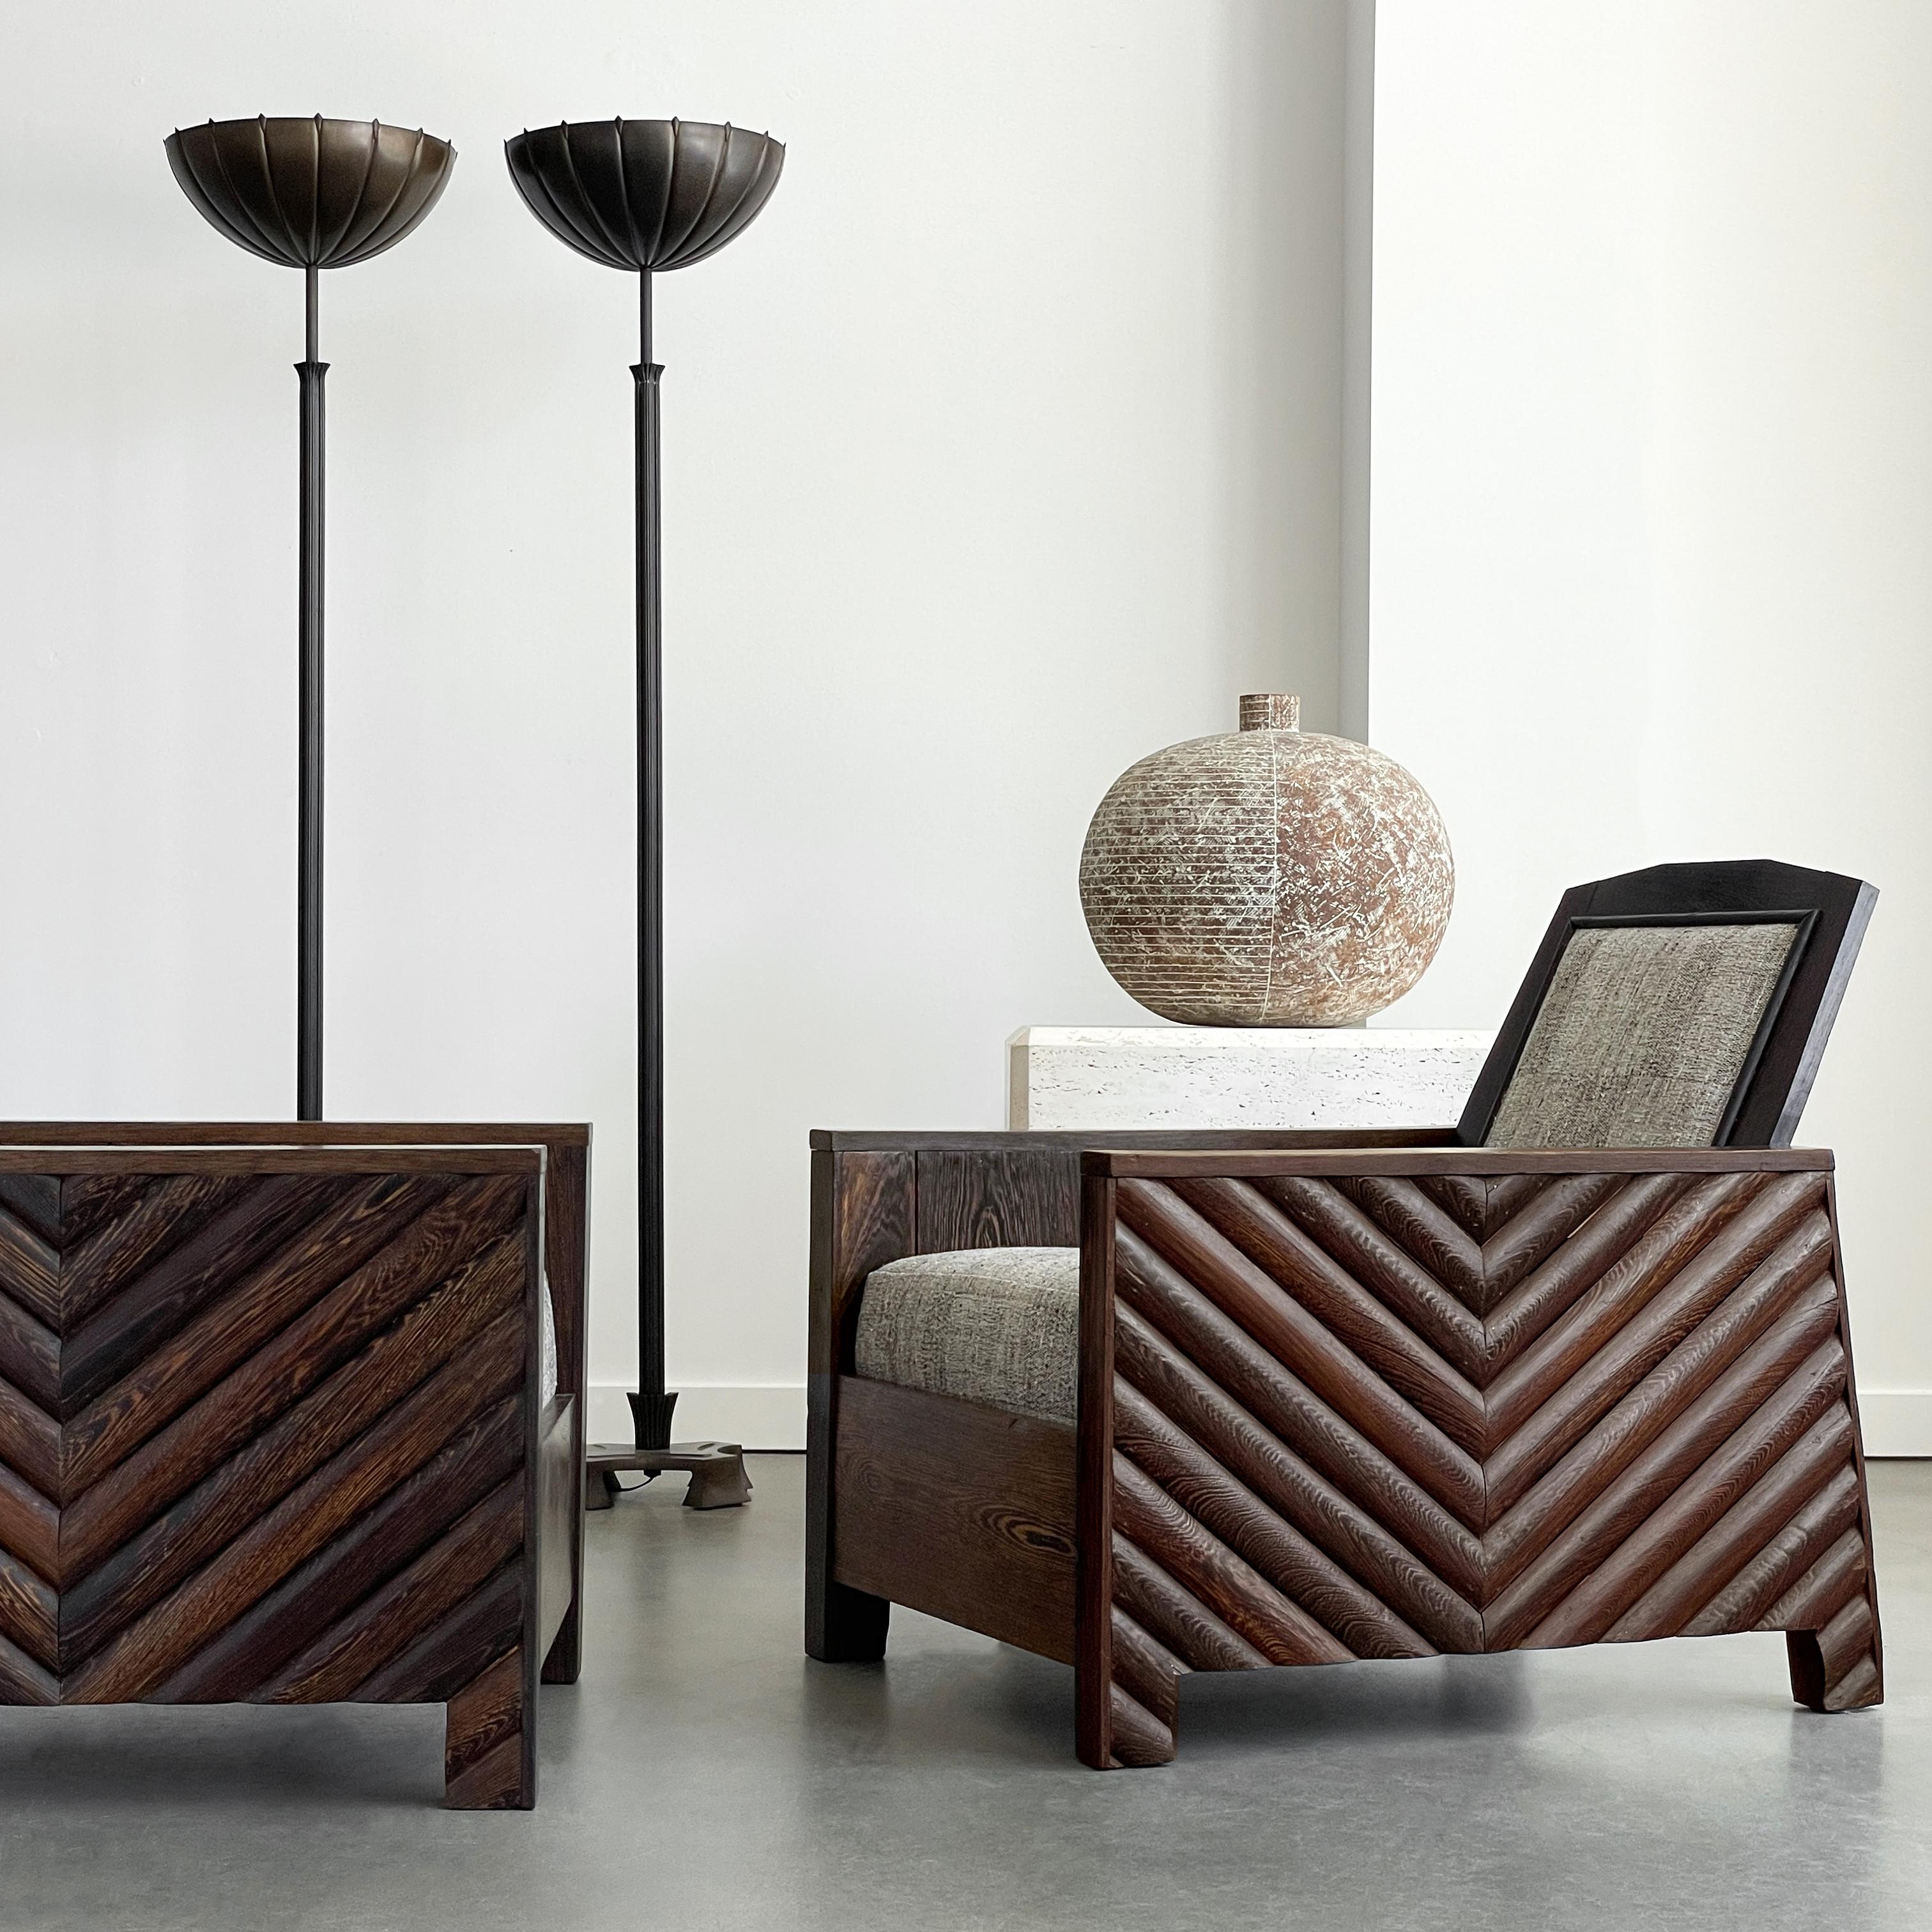 Une paire rare et exquise de chaises de salon club modernistes/art déco scandinaves fabriquées à la main, vers les années 1920. Ces chaises en bois de wengé massif, peut-être uniques en leur genre, offrent un mélange unique de design minimaliste et